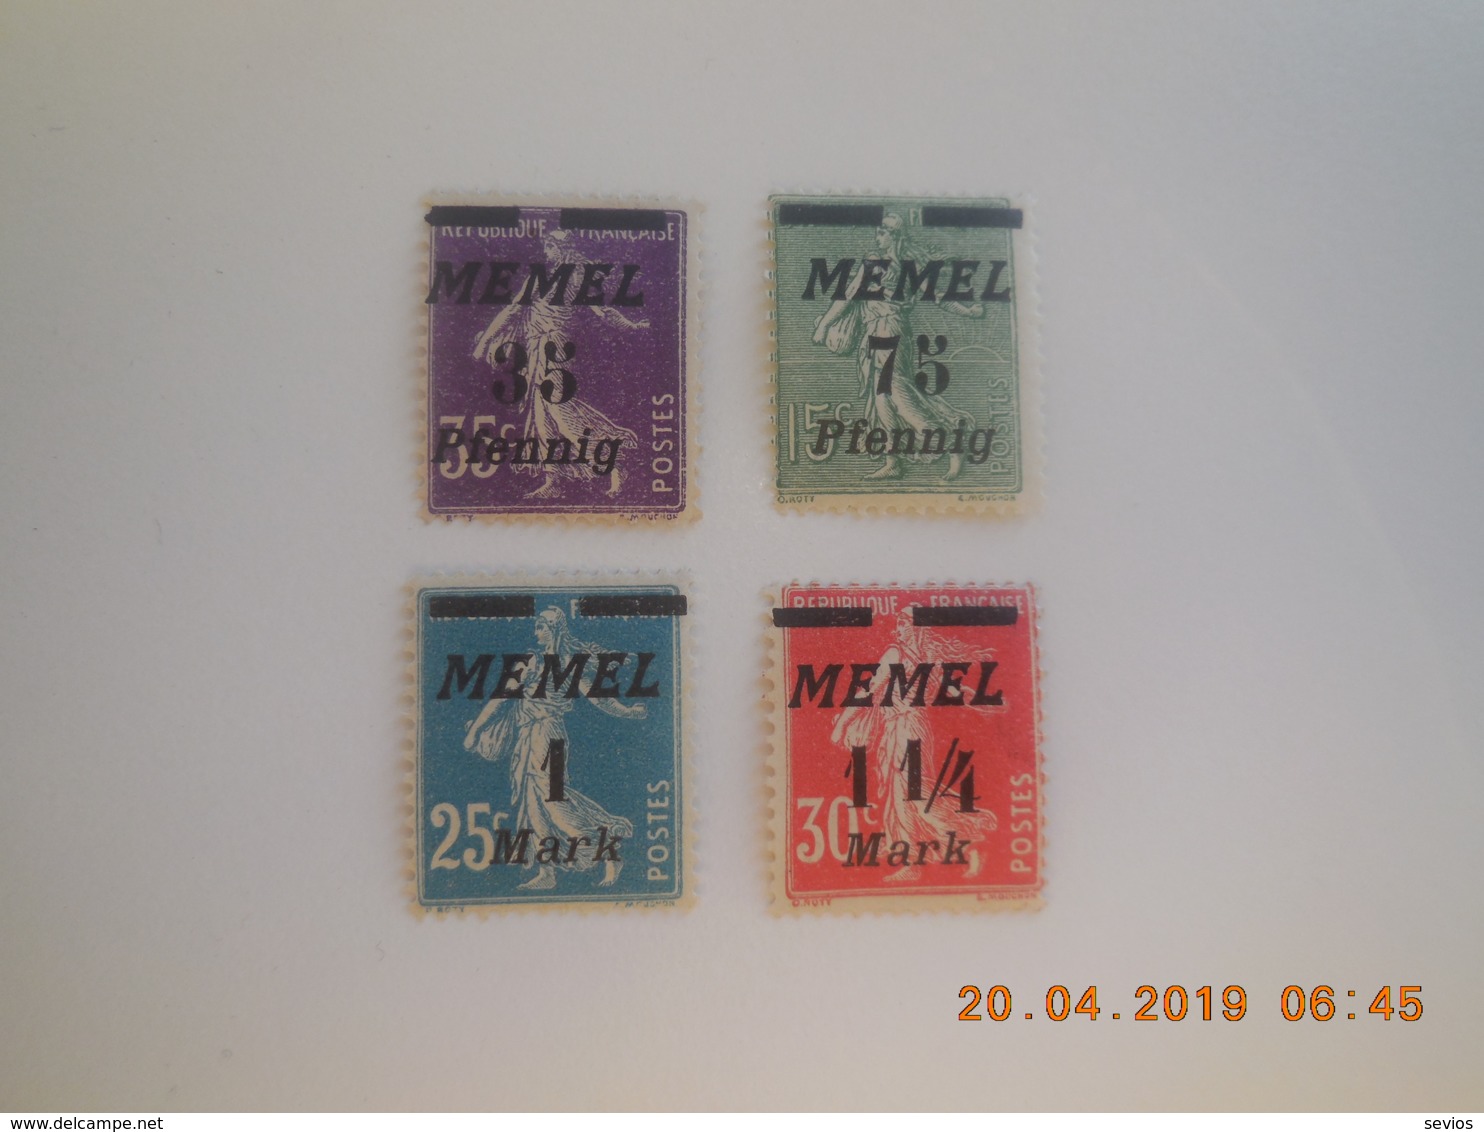 Sevios / Duitsland / **, *, (*) Or Used - Memelgebiet 1923